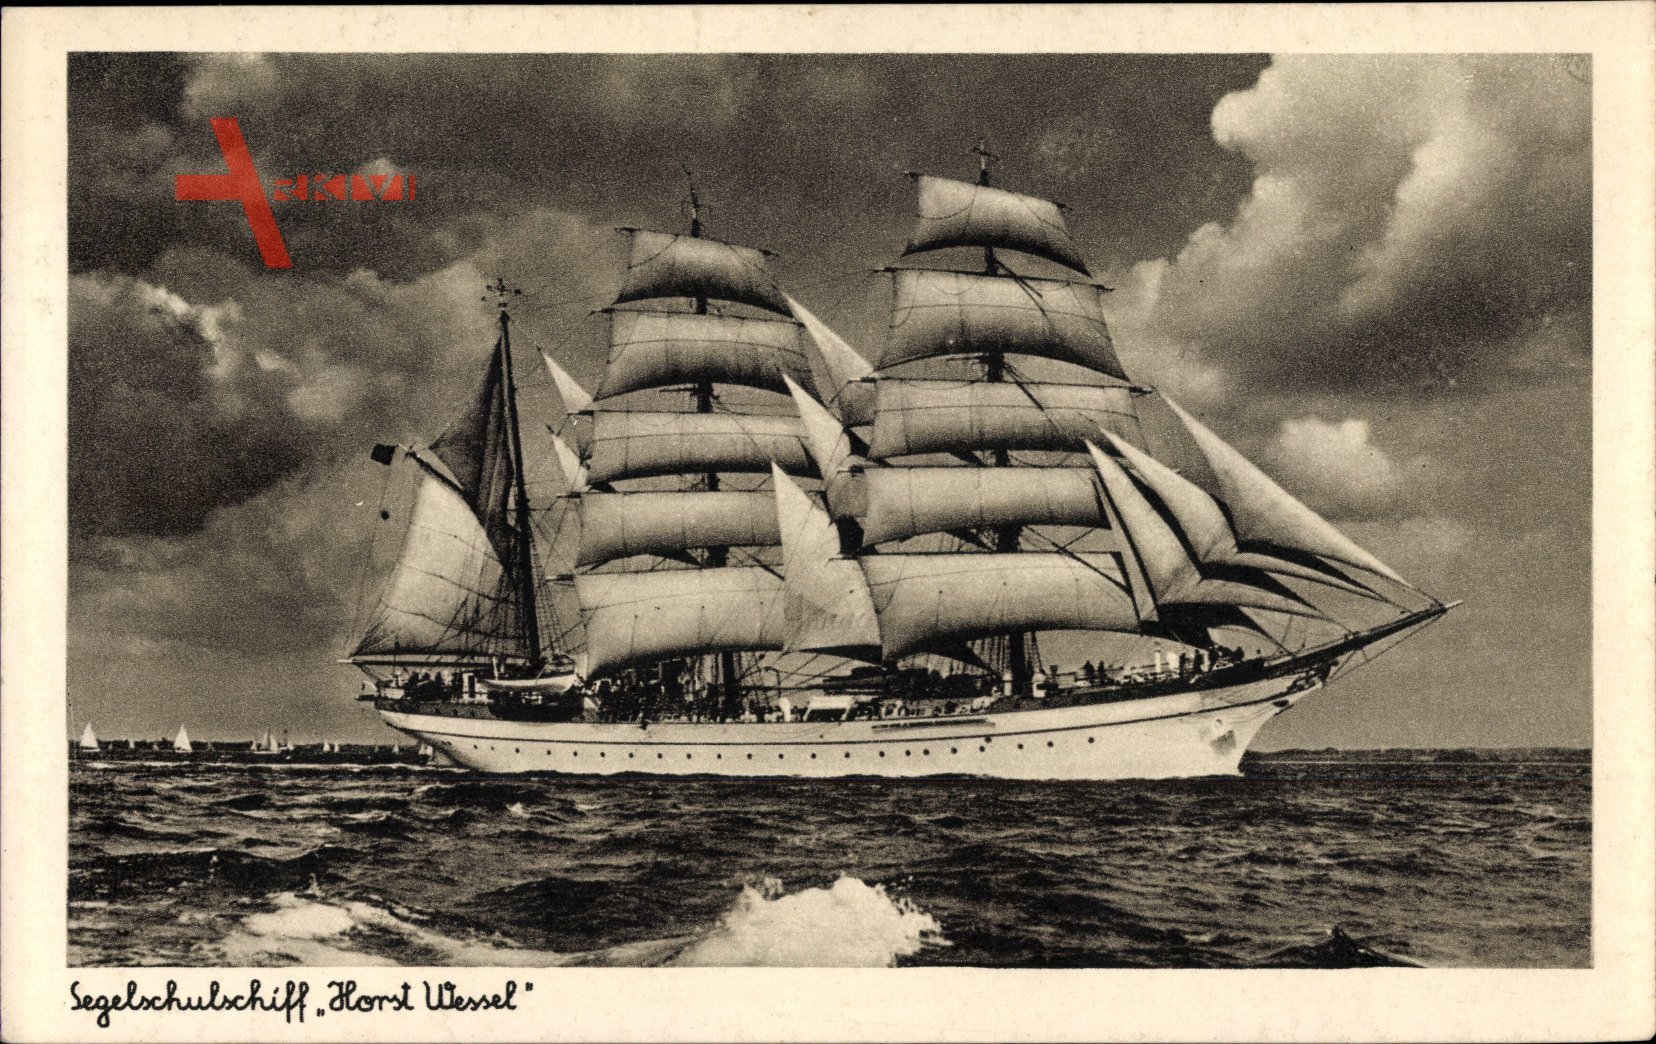 Segelschulschiff Horst Wessel, Dreimastbark, Steuerbord Ansicht